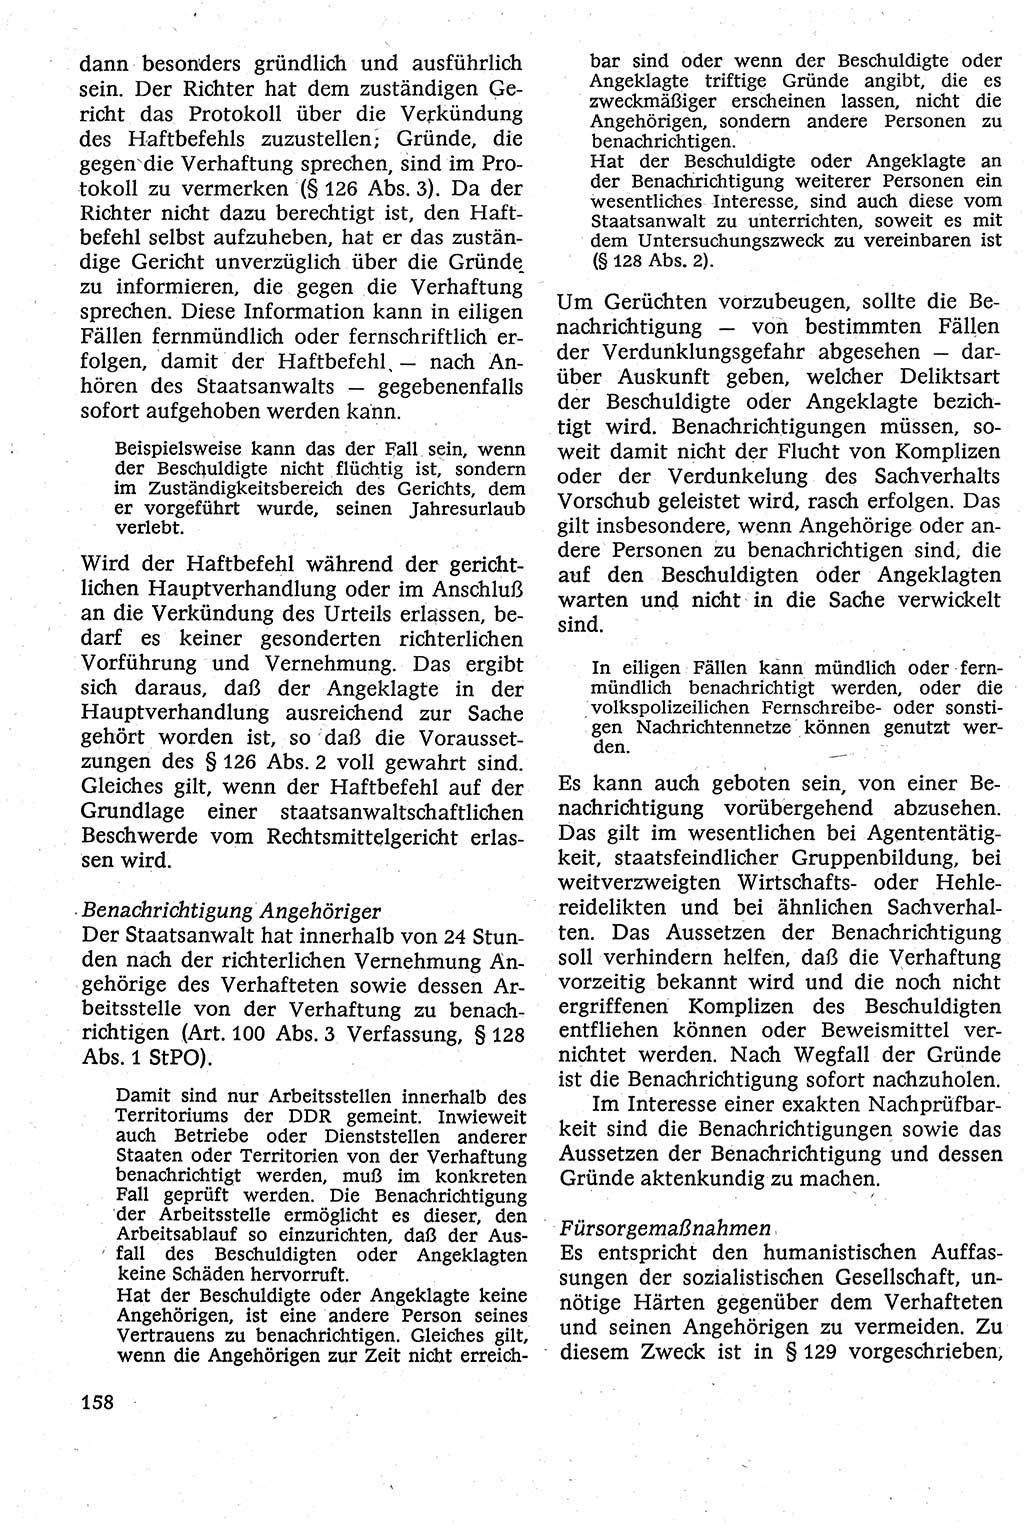 Strafverfahrensrecht [Deutsche Demokratische Republik (DDR)], Lehrbuch 1982, Seite 158 (Strafverf.-R. DDR Lb. 1982, S. 158)